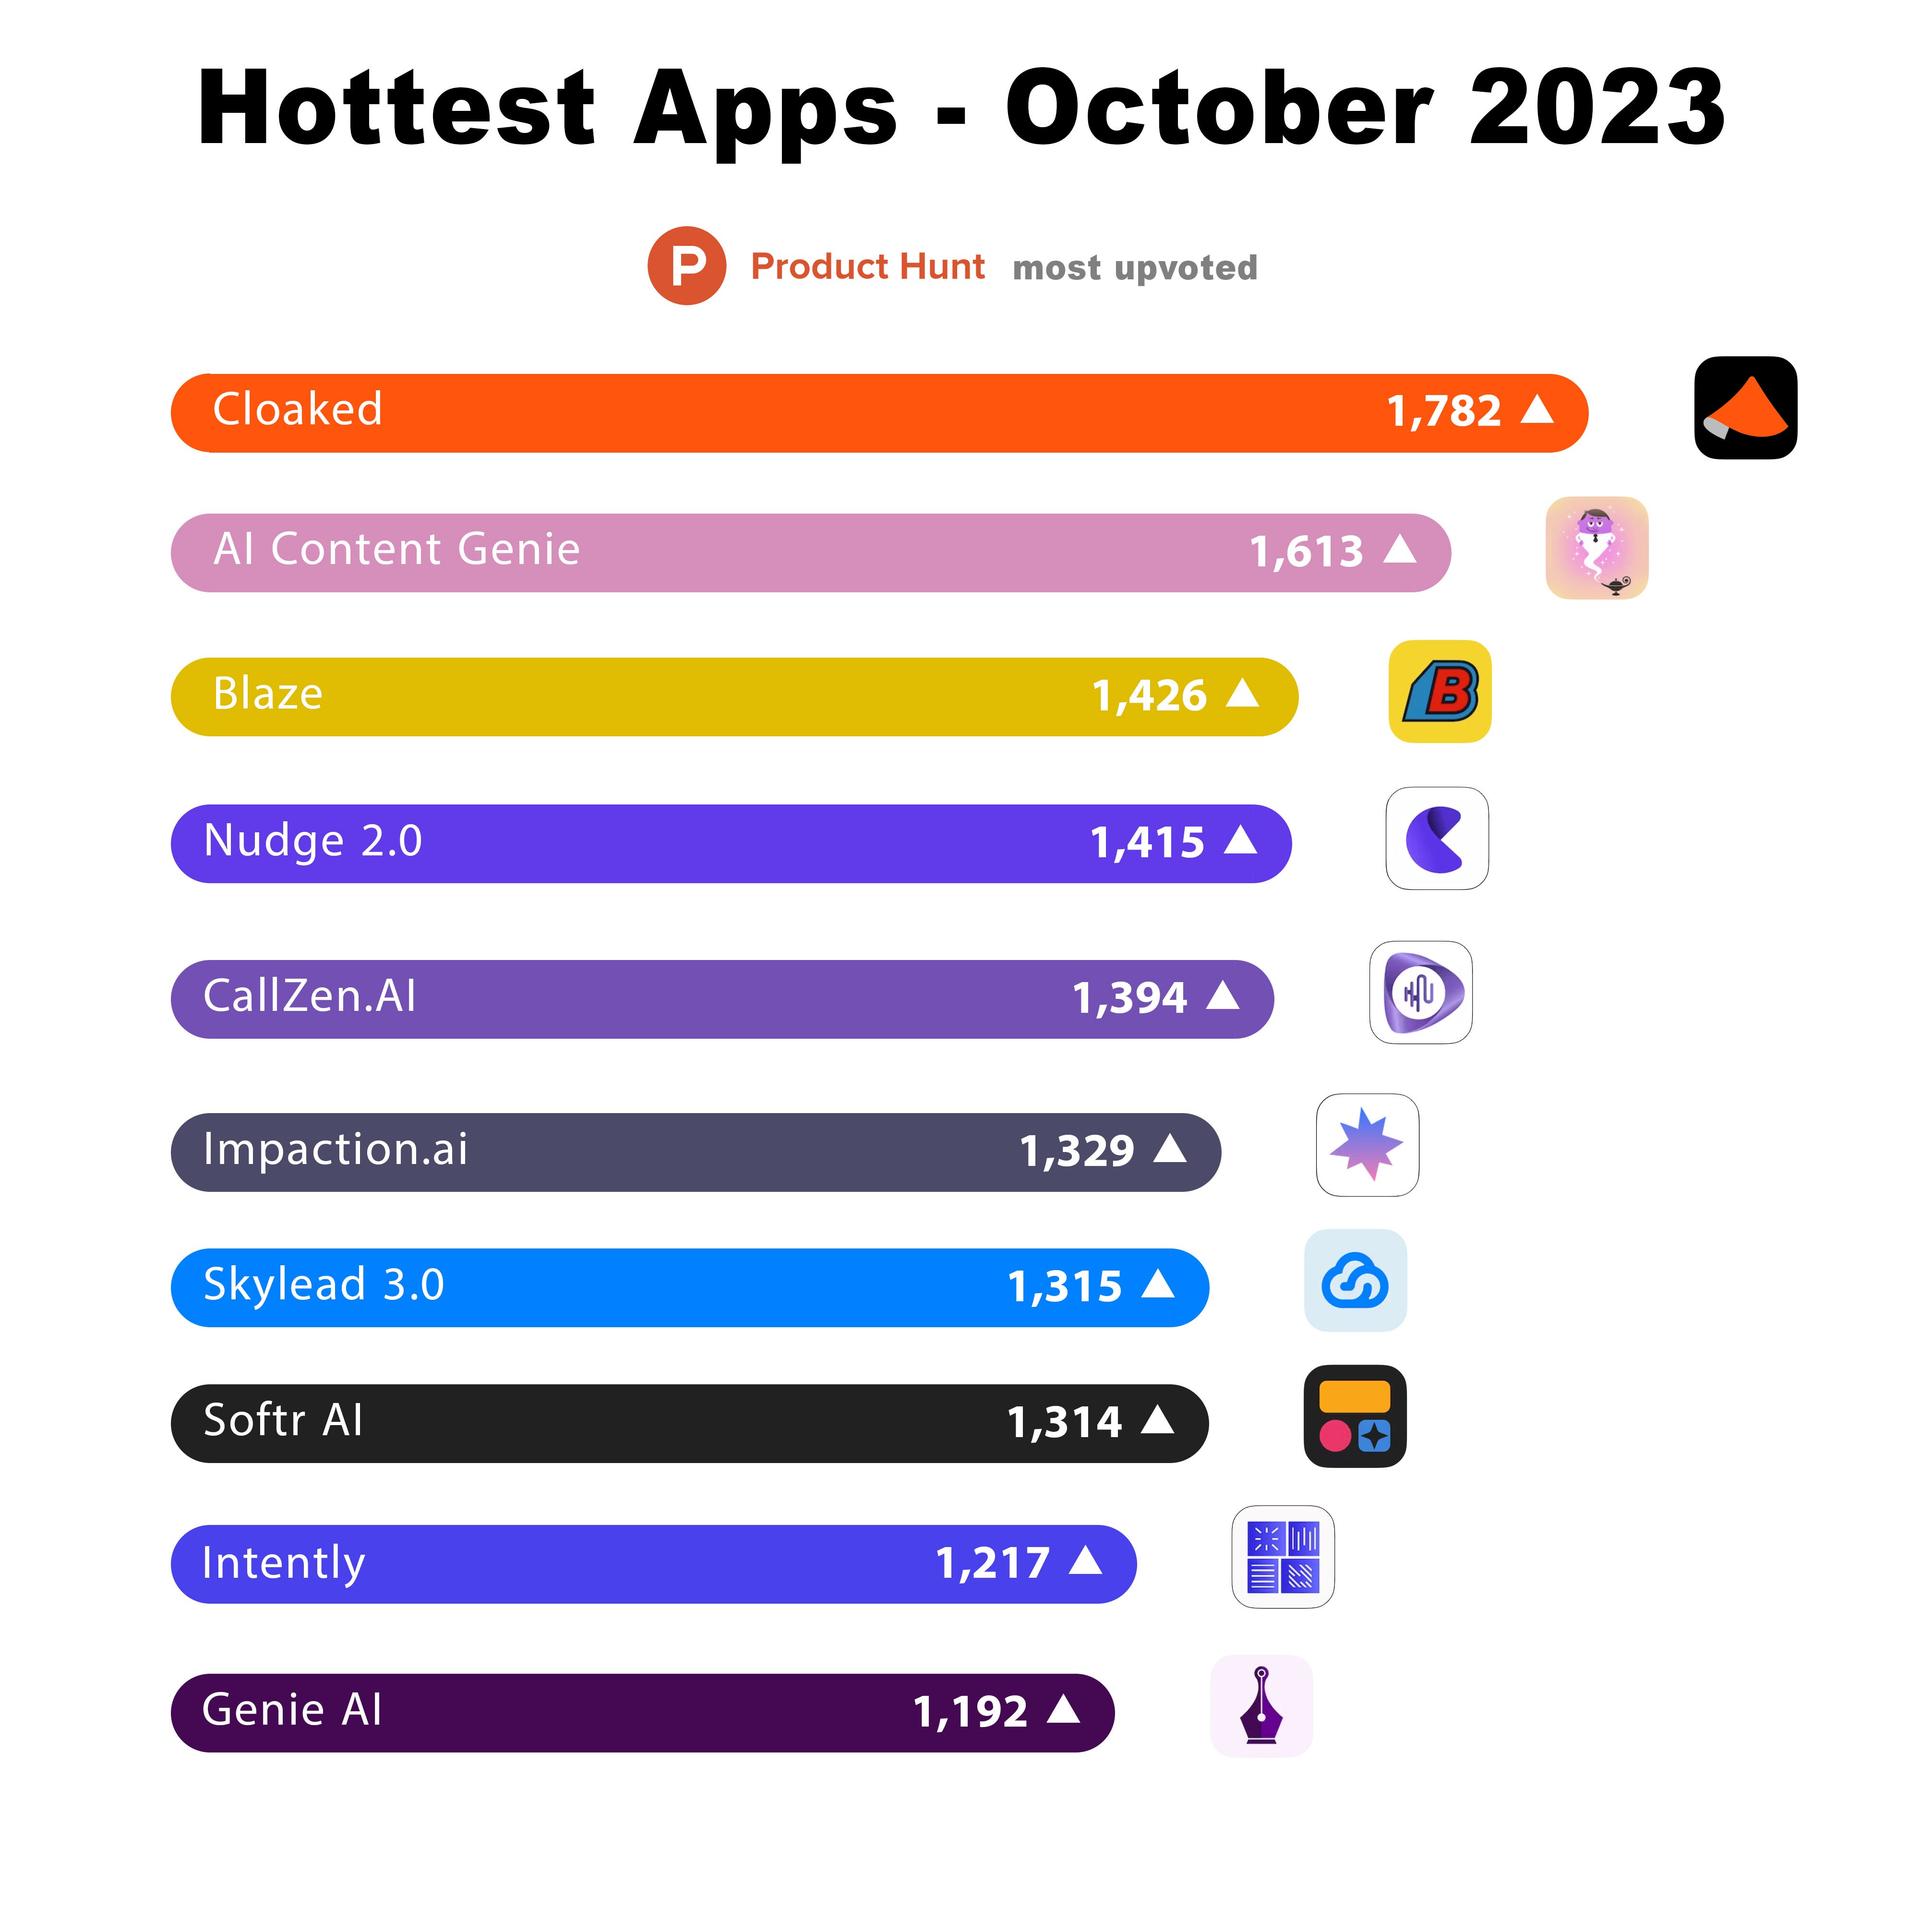 10月份最热门的10款应用程序